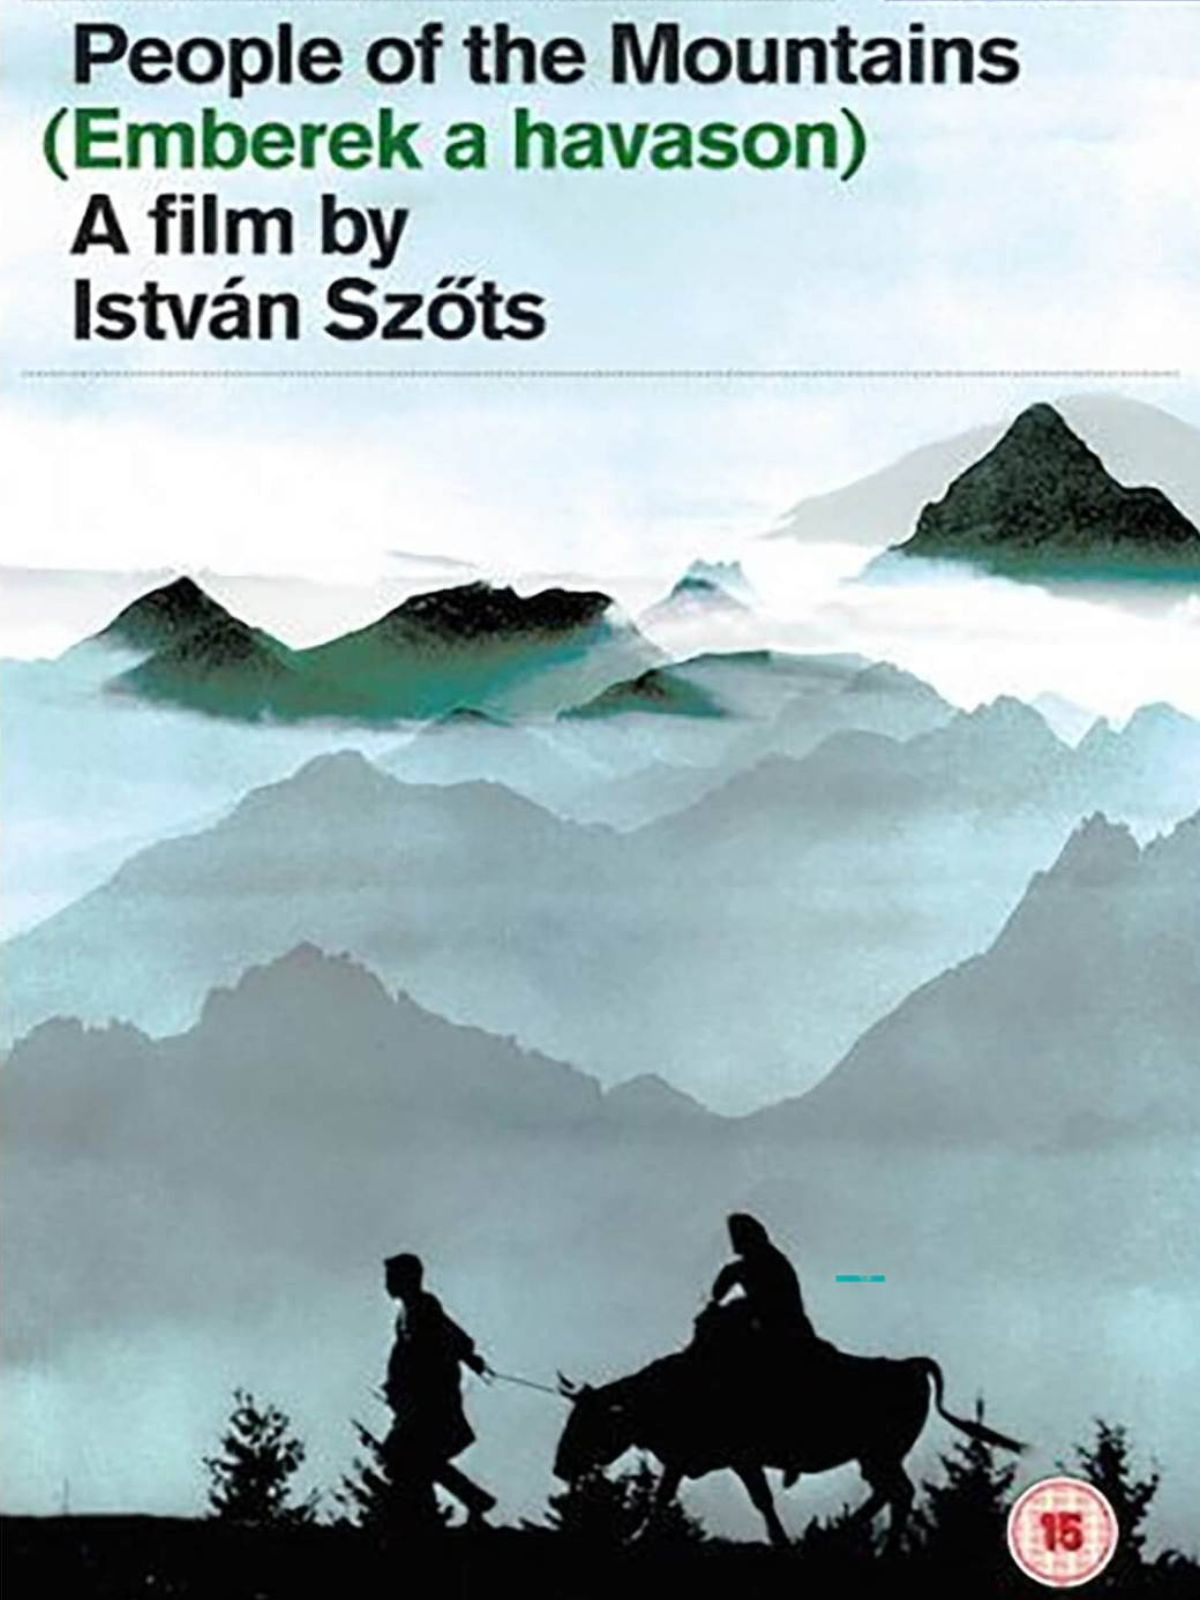 NFI - University Film Club: István Szőts: Men on the Alps